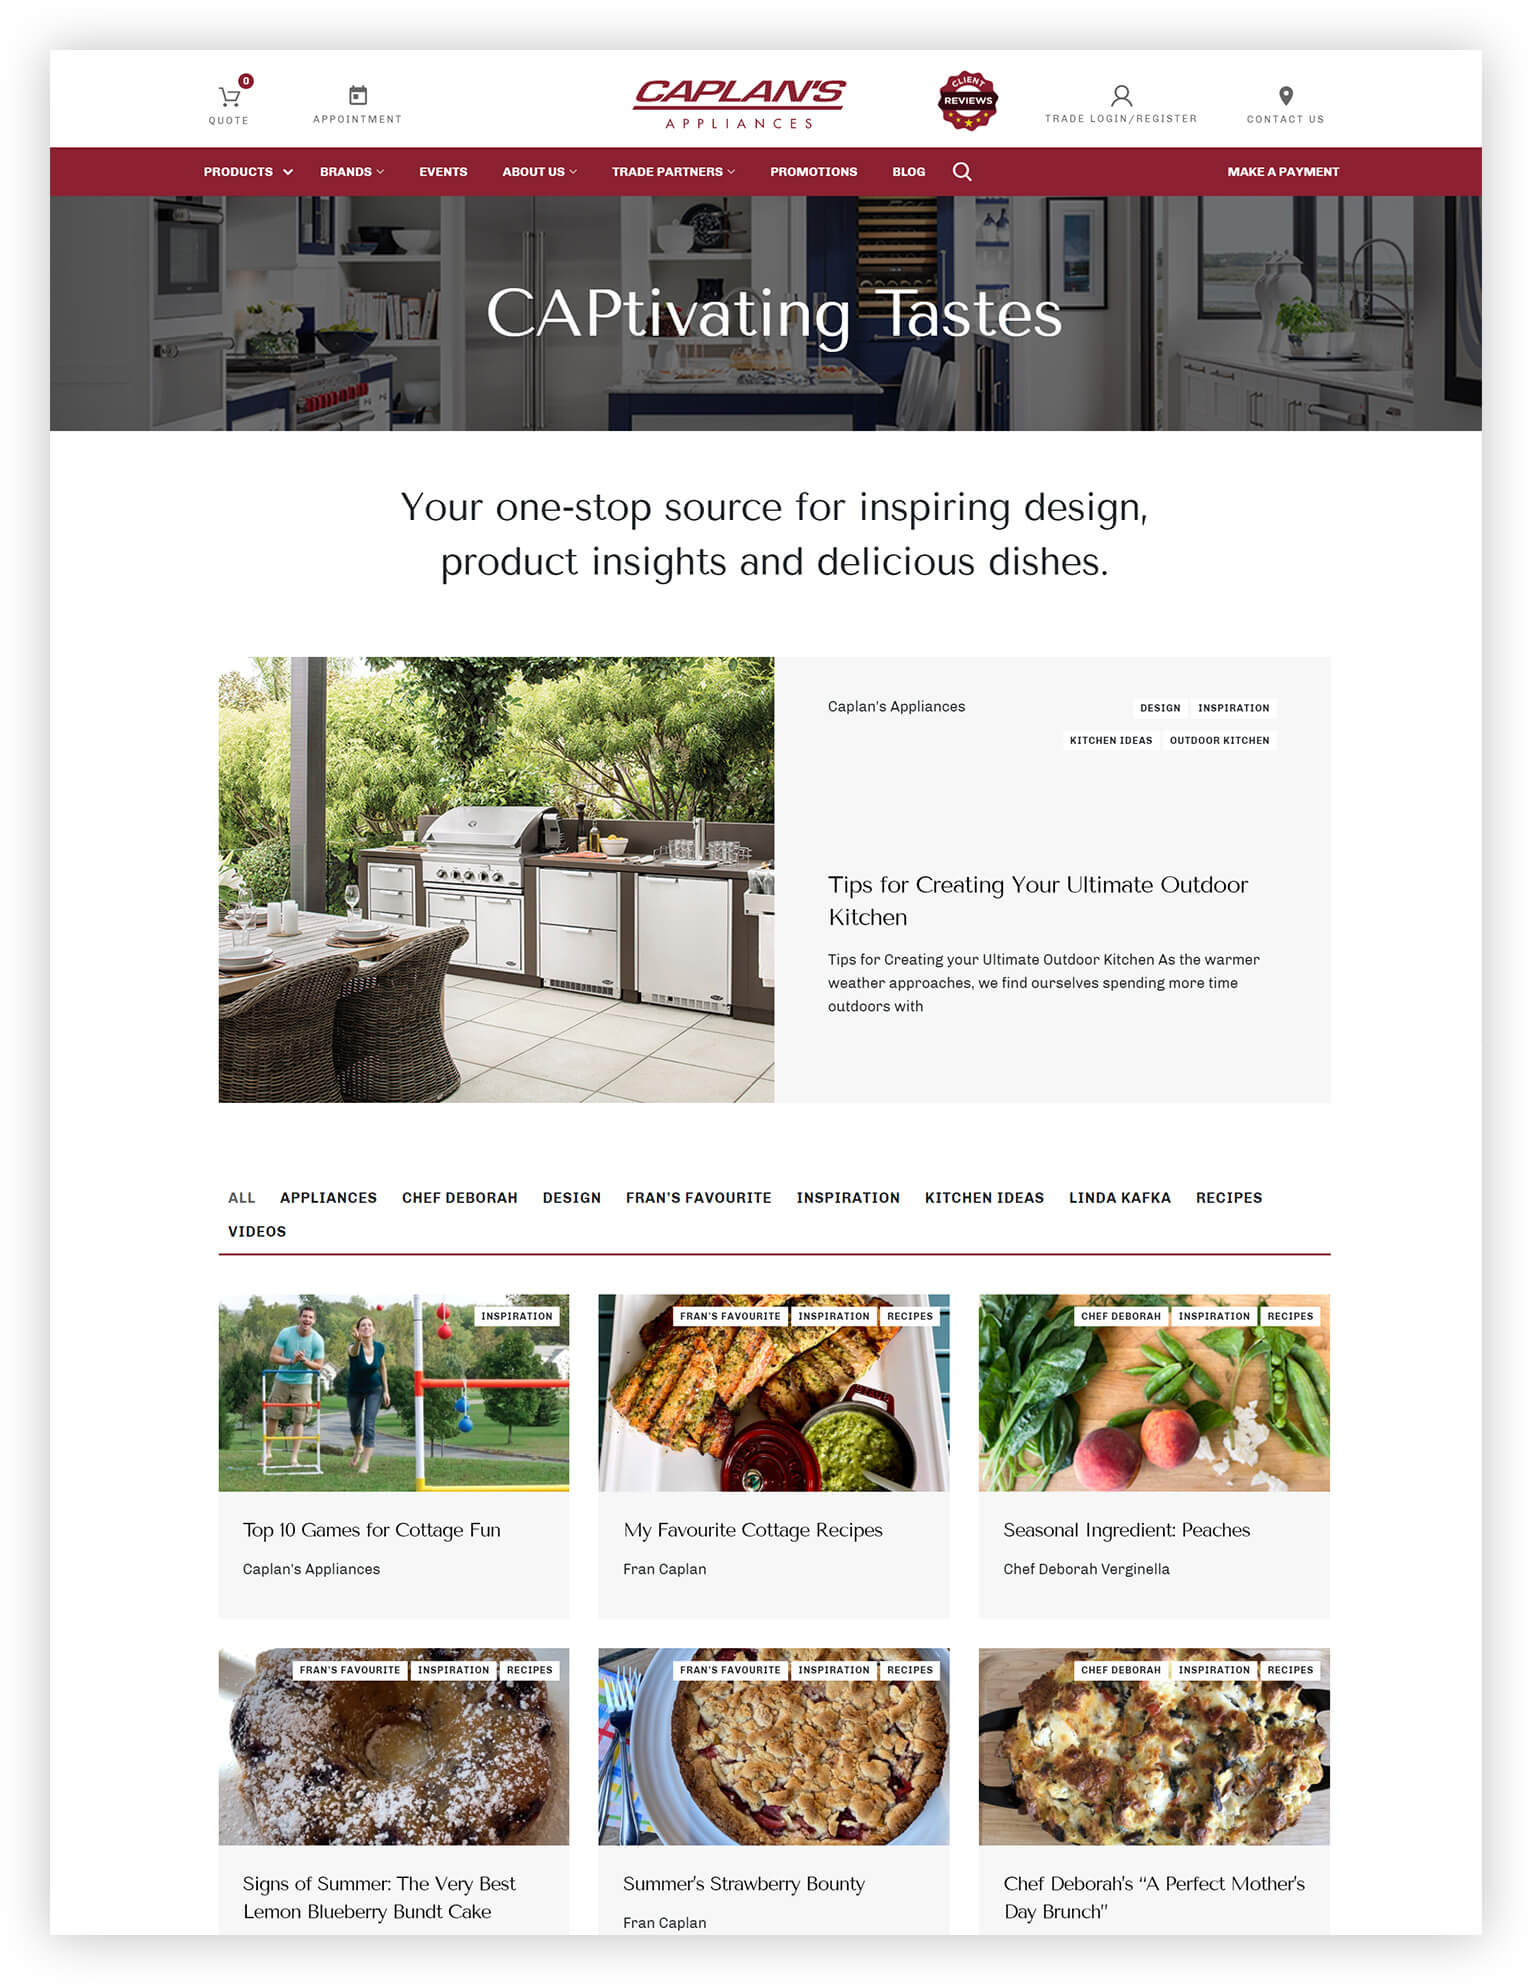 Caplan's Appliances blog page